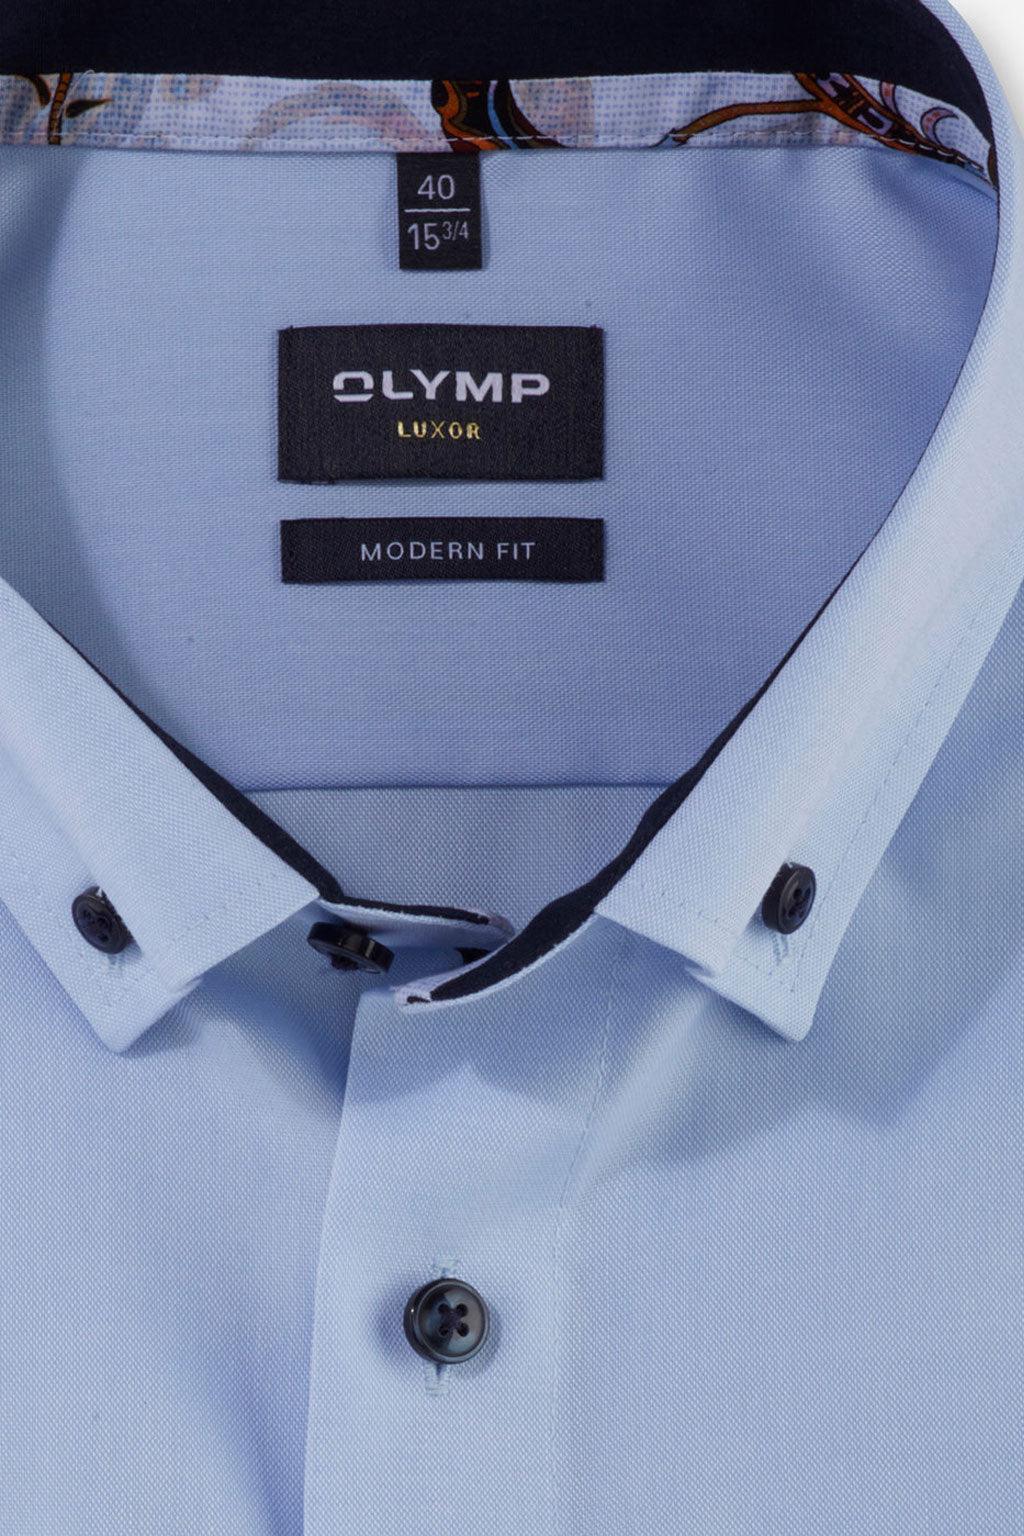 Olymp overhemd lange mouw